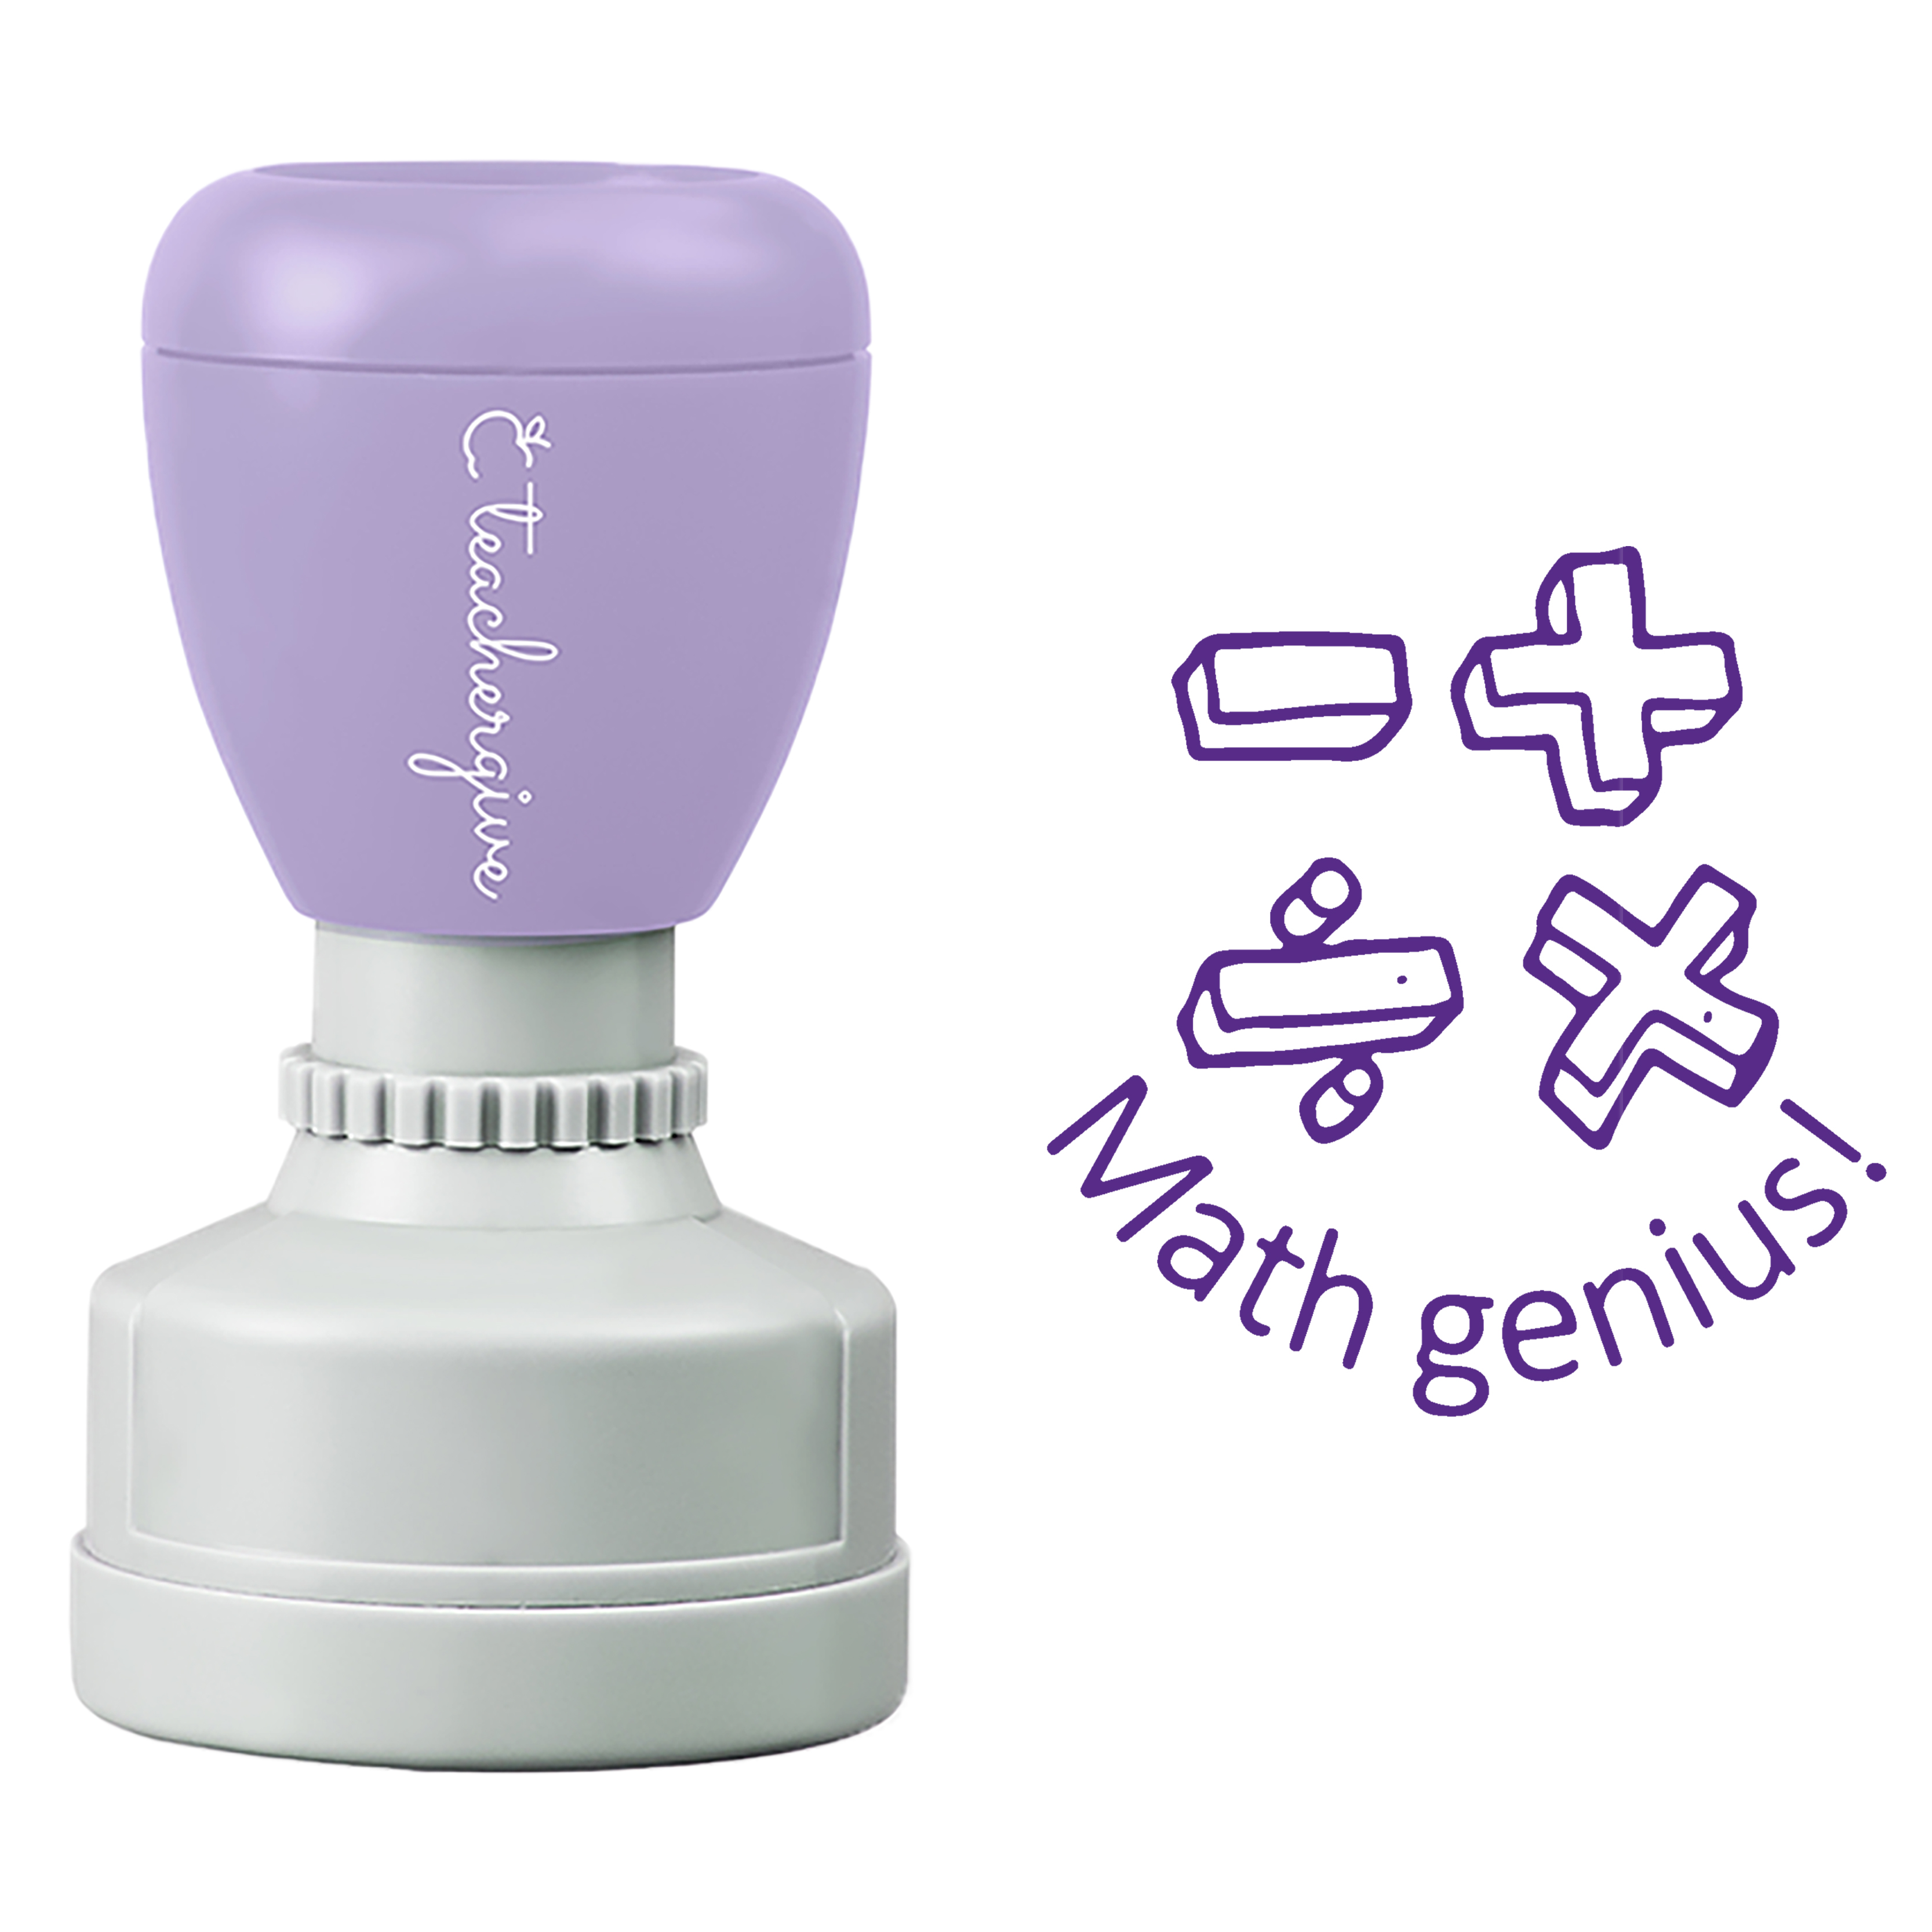 Math Genius Stamp